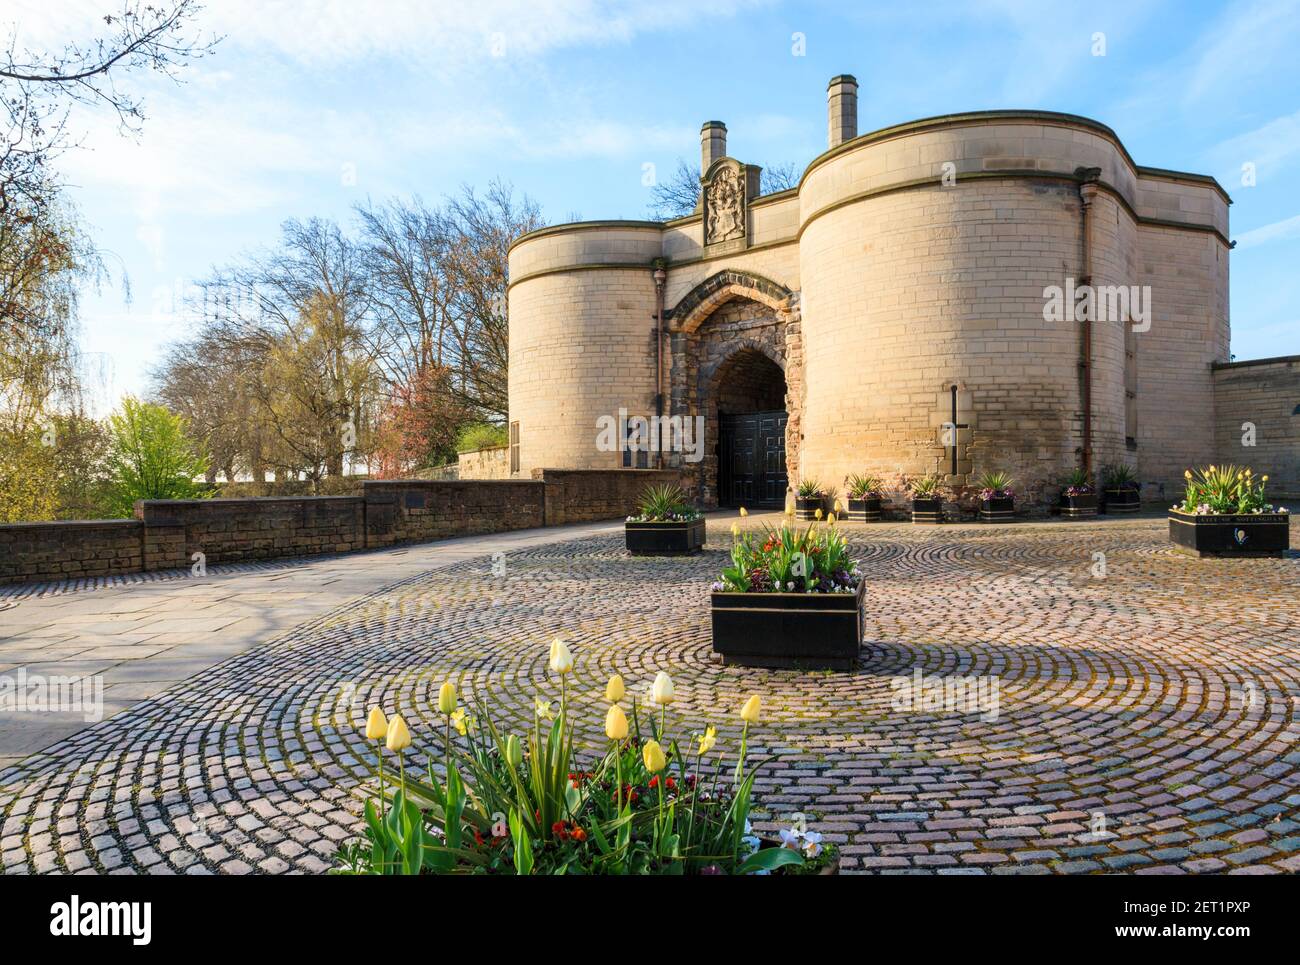 The Gate House et l'entrée du château de Nottingham, Nottingham, England, UK Banque D'Images